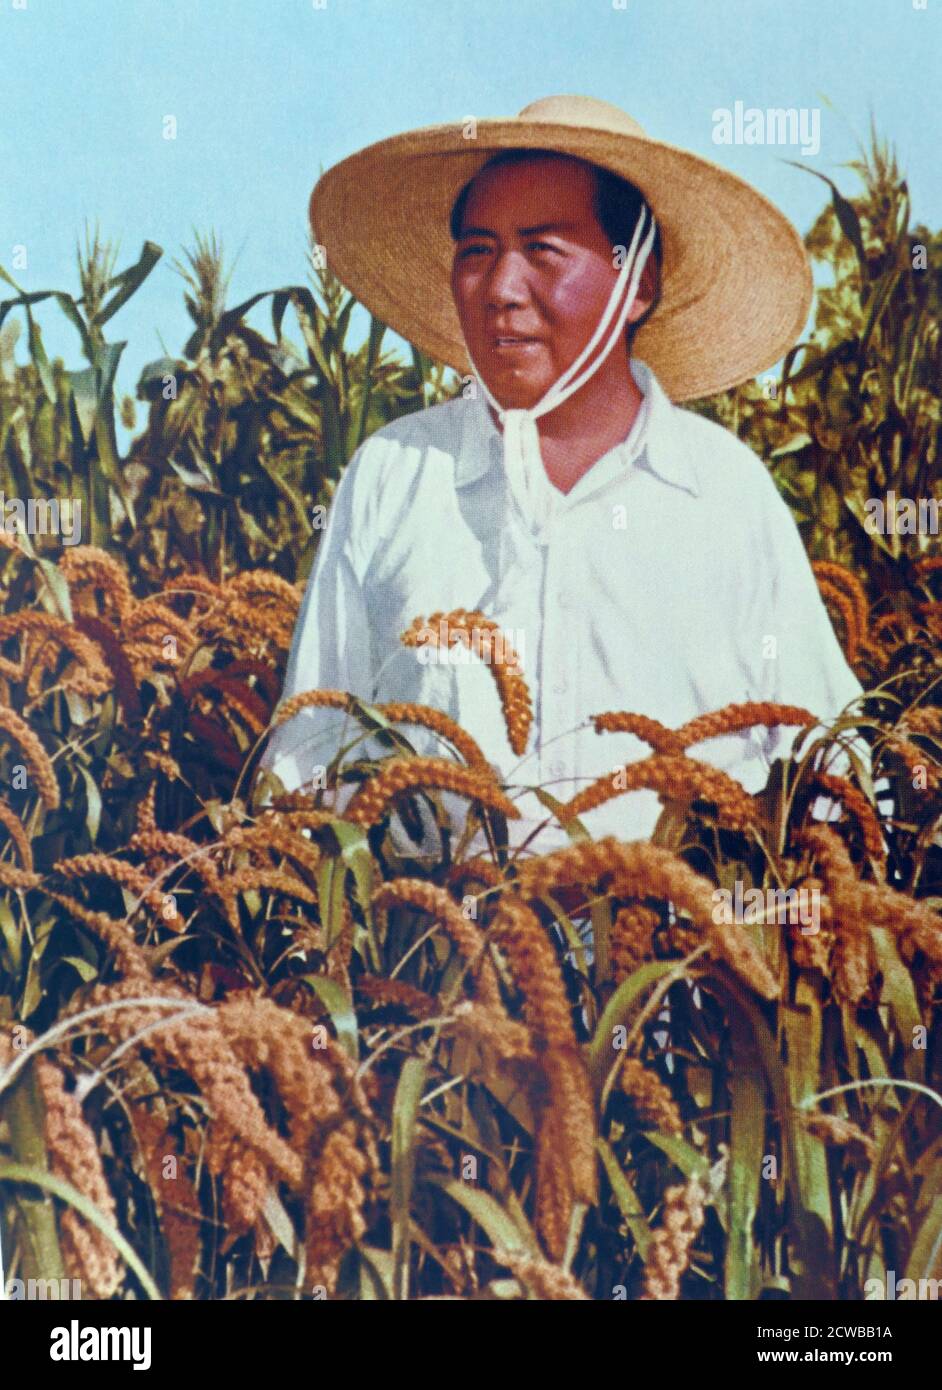 Il presidente Mao ispezione di una azienda agricola nelle zone rurali di Henan. (1958). Il grande balzo in avanti è stato un comitato economico e sociale campagna del Partito Comunista della Cina (CPC) dal 1958 al 1962. La campagna è stata guidata dal presidente Mao Zedong e finalizzati a trasformare velocemente il paese da un economia agraria in una società socialista attraverso la rapida industrializzazione e la collettivizzazione. Foto Stock